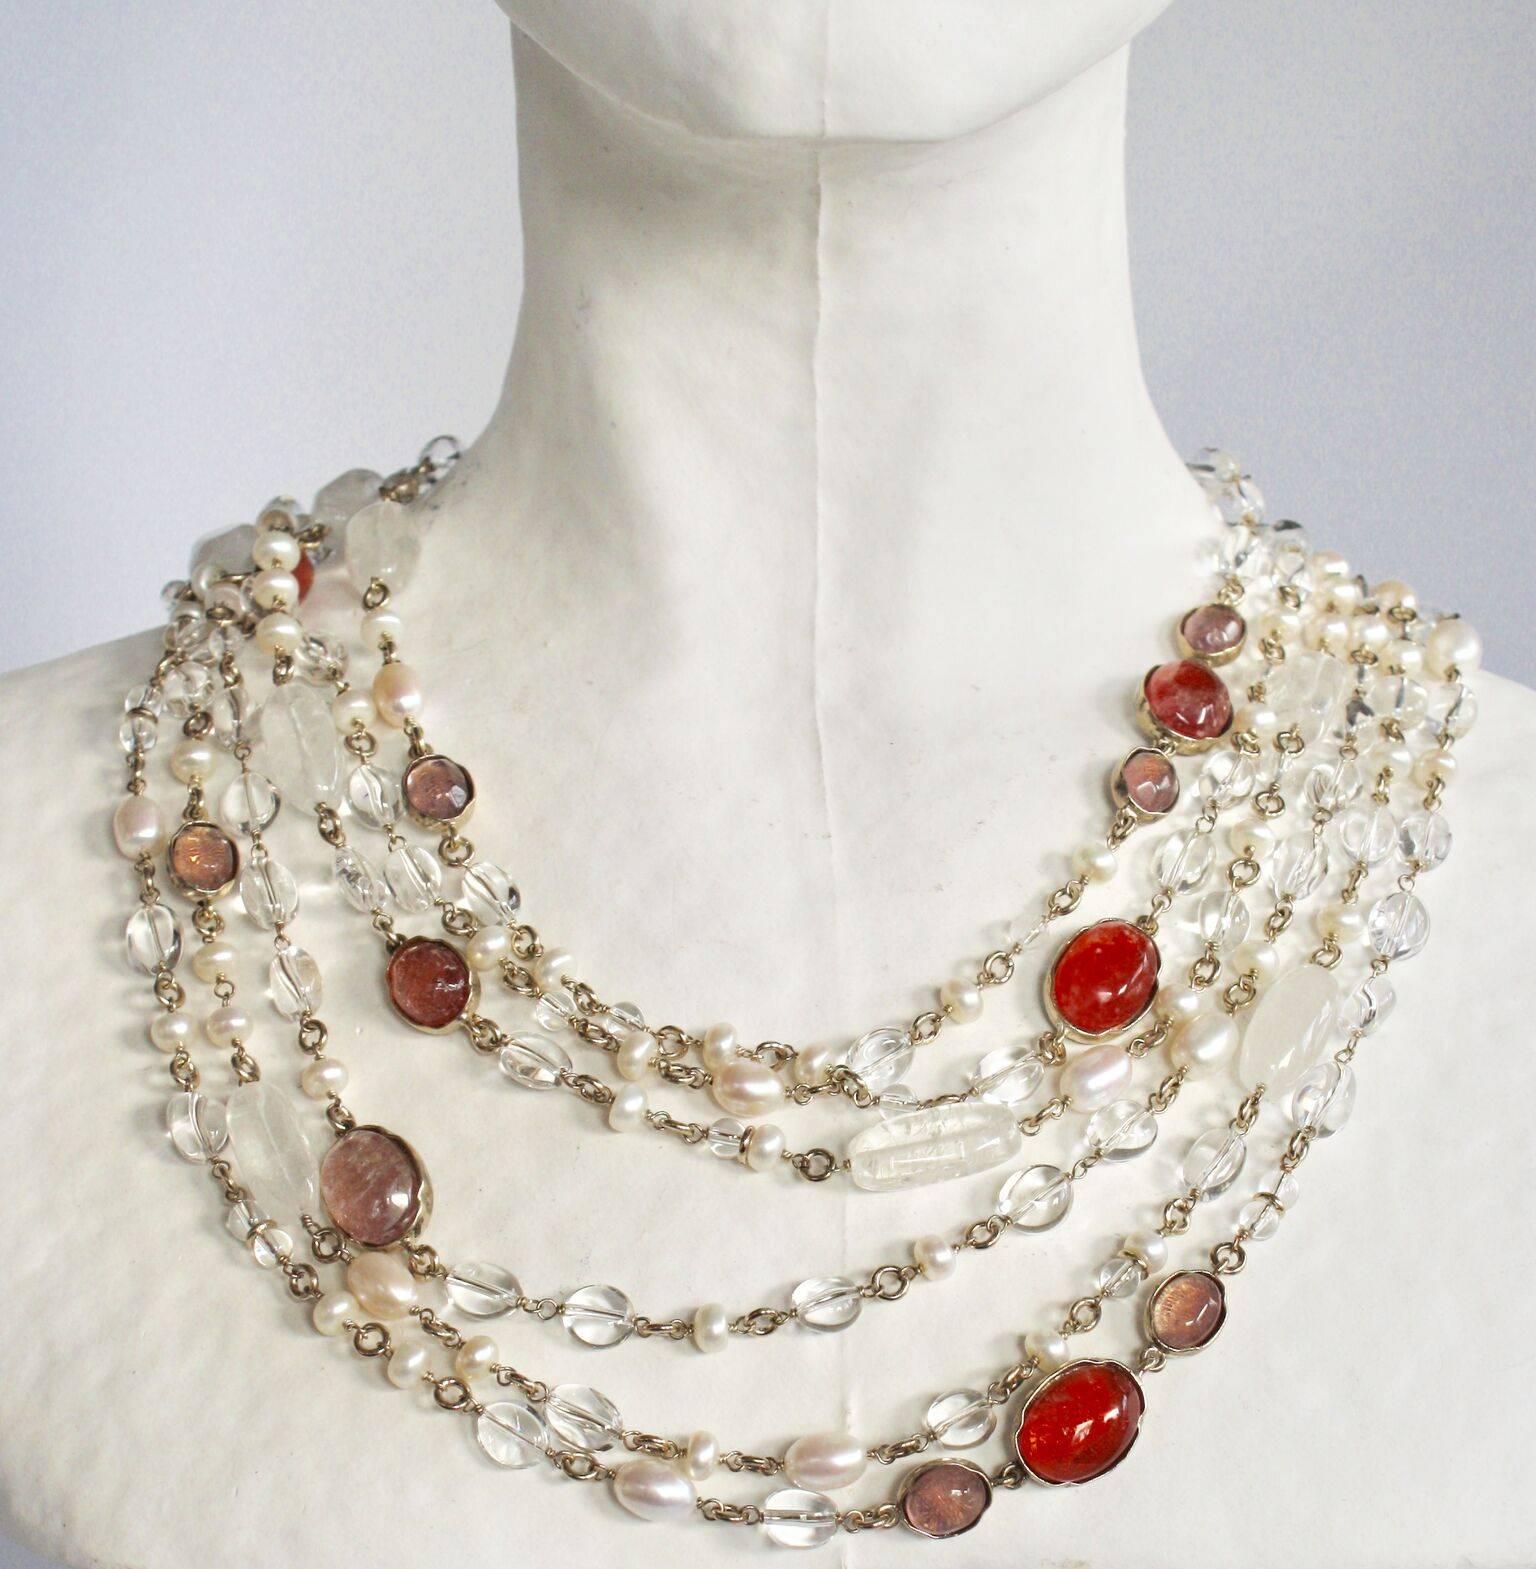 Collier long à trois rangs avec des cristaux de roche peints à la main en rose/saumon, entourés de cristaux de roche transparents et de perles d'eau douce. Le collier peut être porté long ou doublé et porté court pour créer un collier ras du cou. De